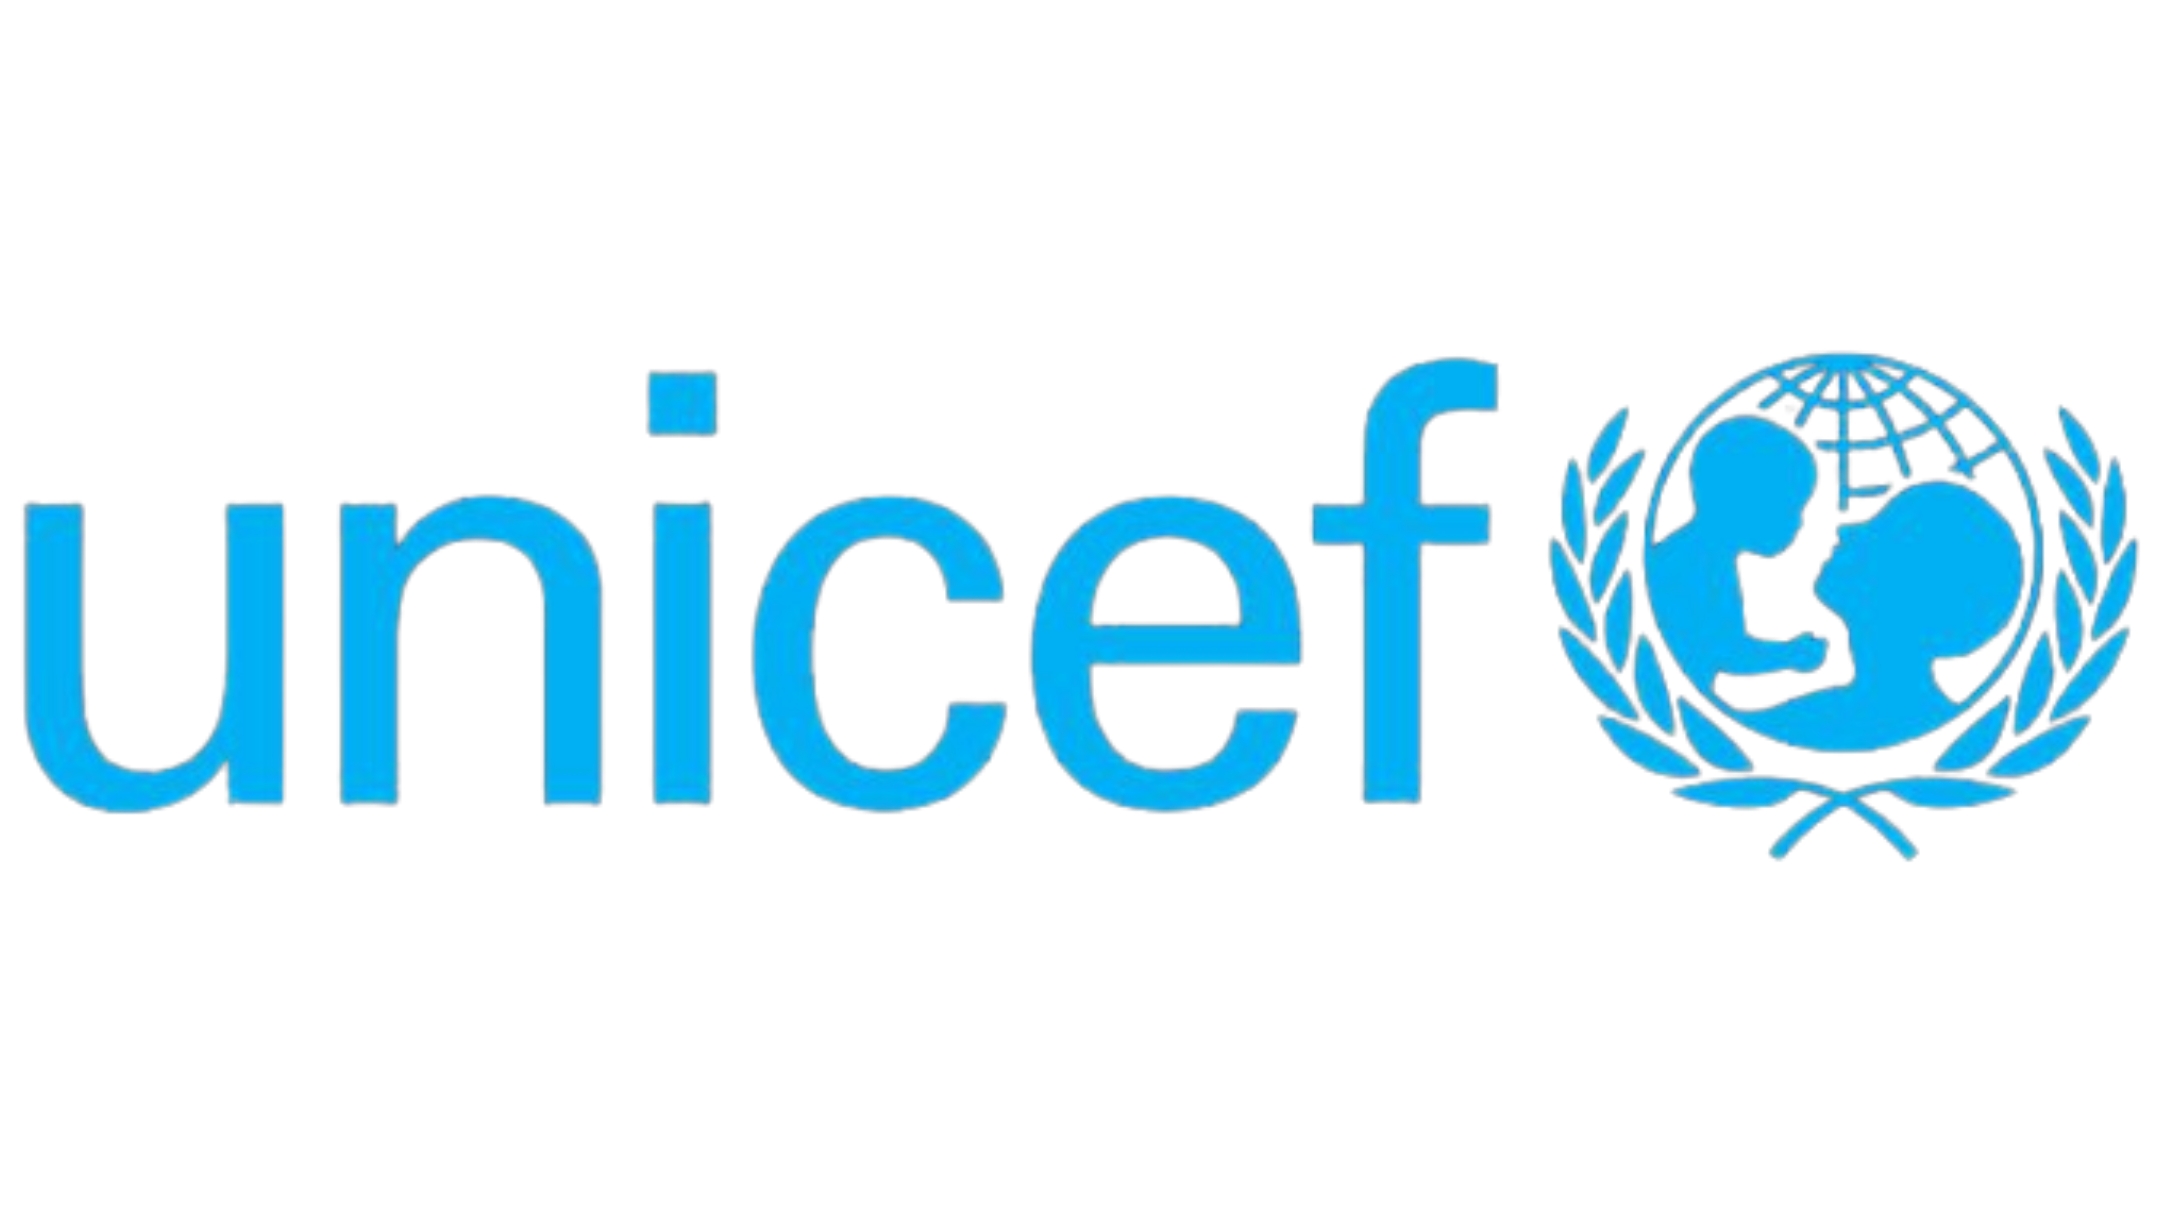 UNICEF Image